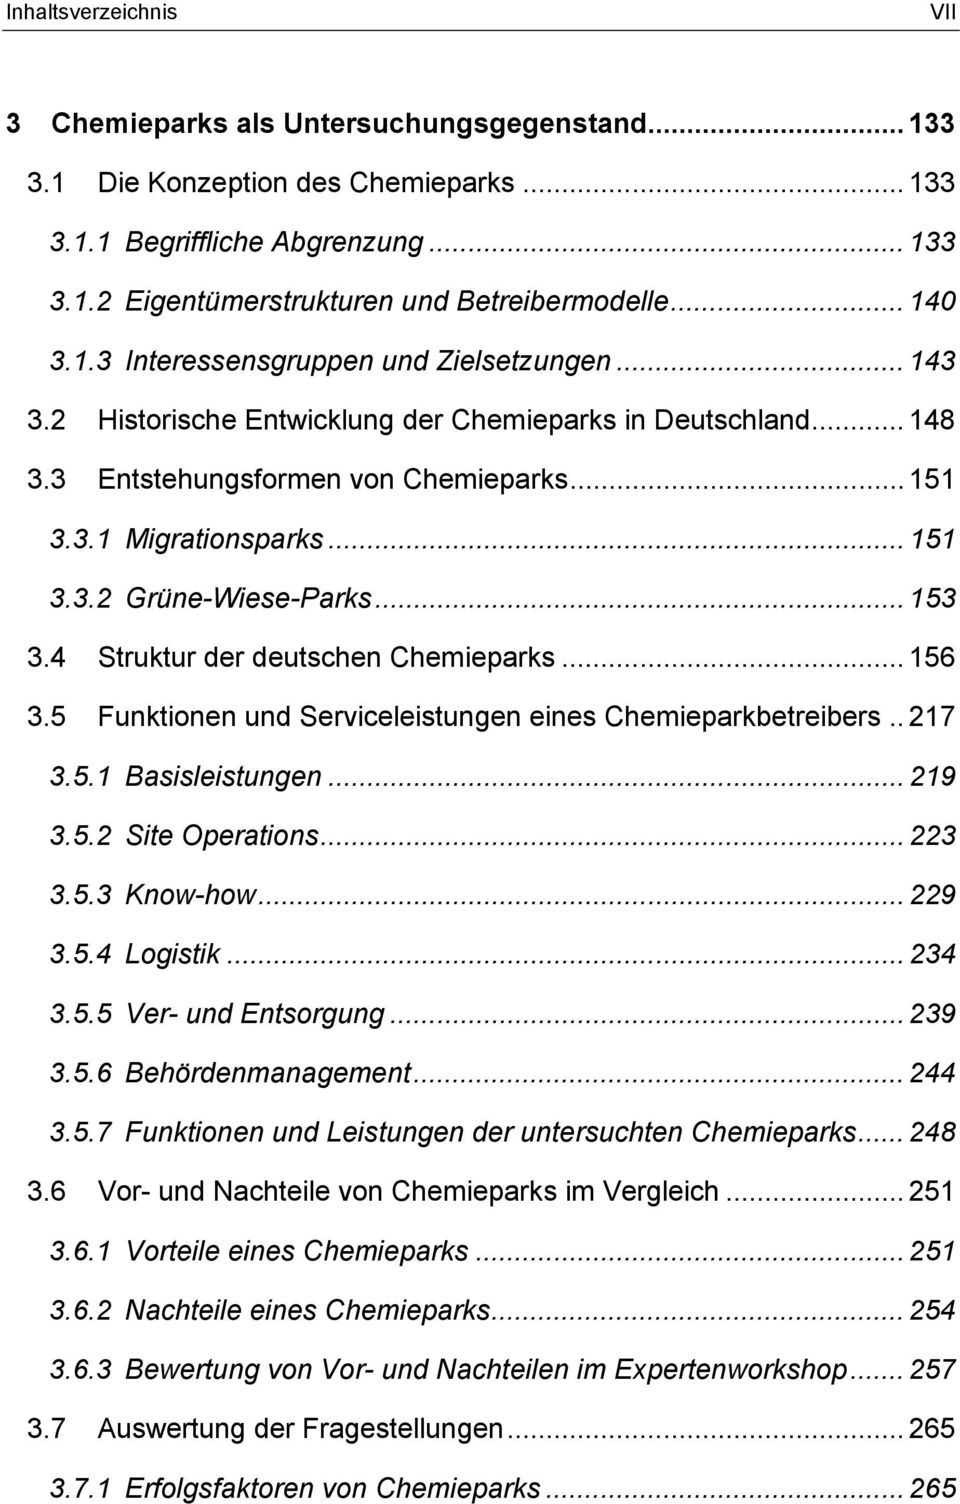 .. 153 3.4 Struktur der deutschen Chemieparks... 156 3.5 Funktionen und Serviceleistungen eines Chemieparkbetreibers.. 217 3.5.1 Basisleistungen... 219 3.5.2 Site Operations... 223 3.5.3 Know-how.